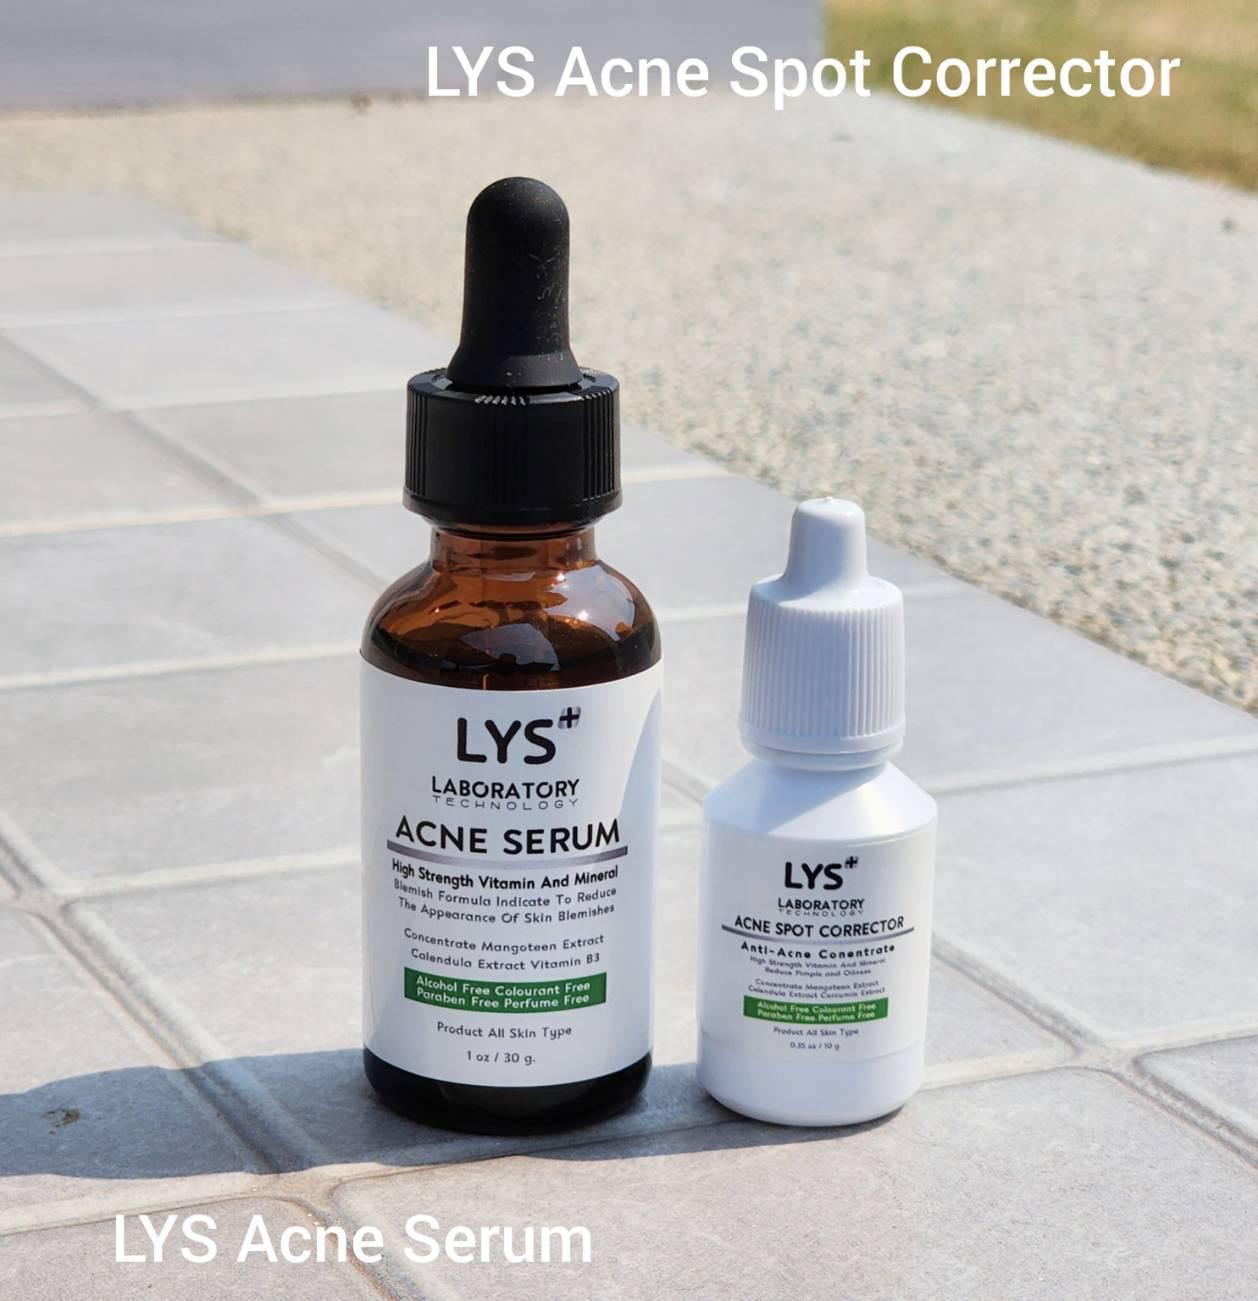 ภาพหน้าปก กูหน้าพัง หน้าแพ้สารสเตียรอยด์ หน้าติดสารสตียรอยด์ แพ้ครีม ผิวแพ้ง่าย LYS Acne Serum และ LYS Acne Spot Corrector แบรนด์ lysofficialstore ได้รับรางวัล ที่:0